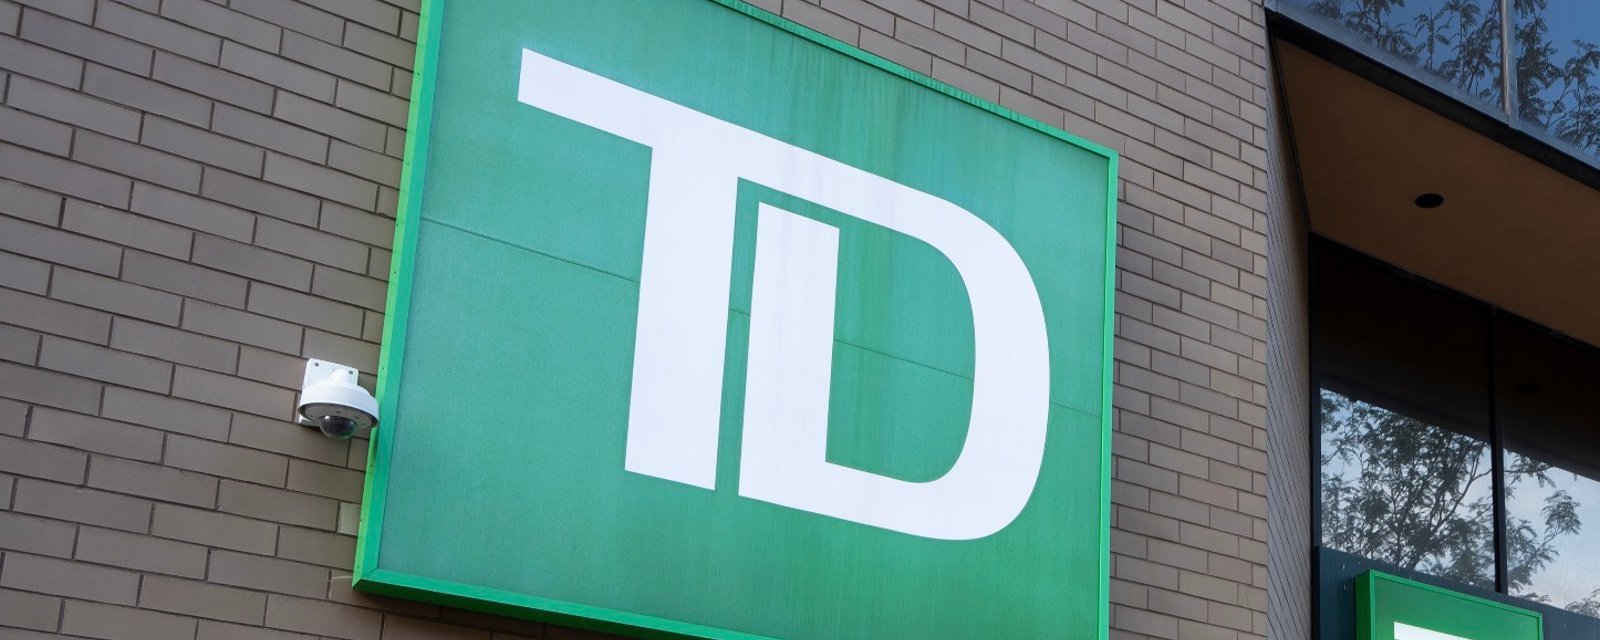 Recours collectif: Des clients de la Banque TD pourraient se partager 15,9 millions $